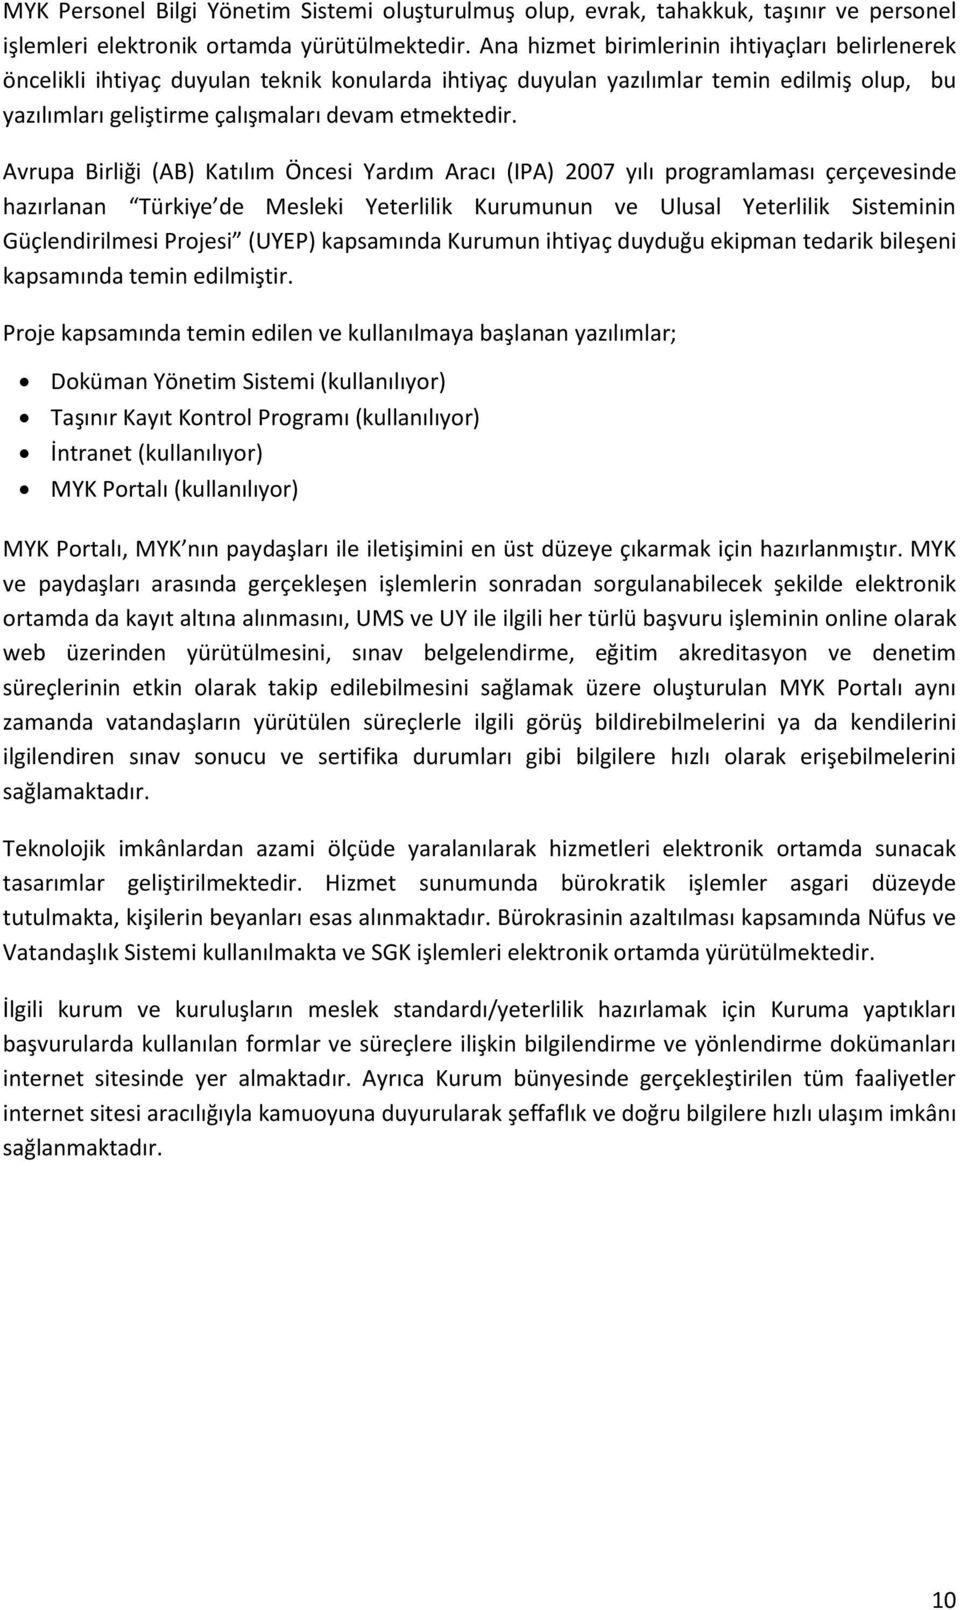 Avrupa Birliği (AB) Katılım Öncesi Yardım Aracı (IPA) 2007 yılı programlaması çerçevesinde hazırlanan Türkiye de Mesleki Yeterlilik Kurumunun ve Ulusal Yeterlilik Sisteminin Güçlendirilmesi Projesi